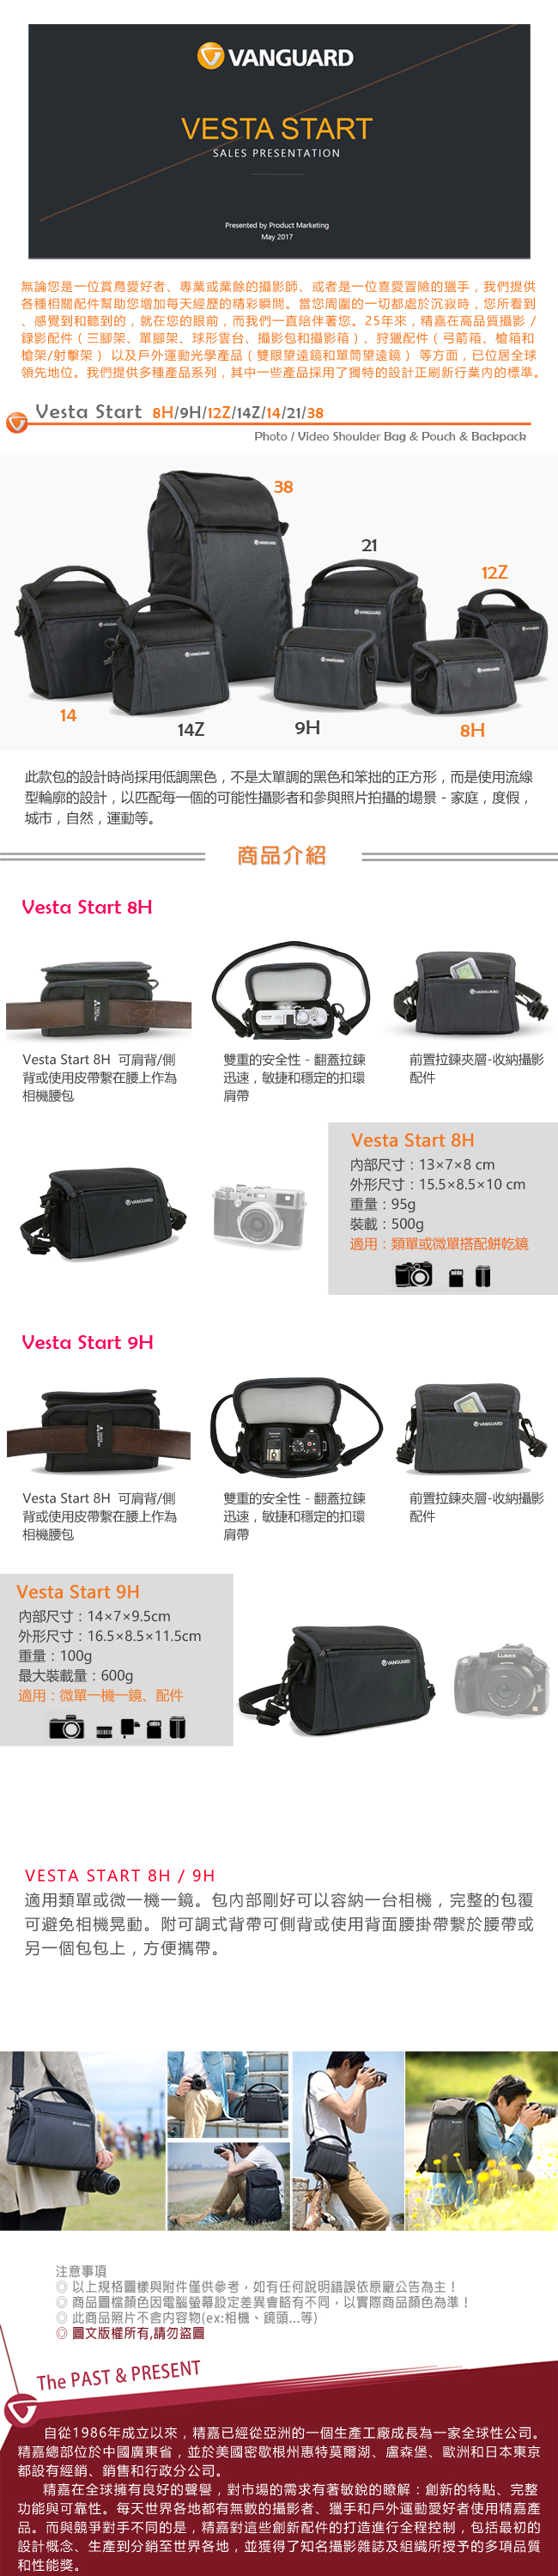 VANGUARD 精嘉 唯它黑匣 9H 微單眼相機包 Vesta Start 9H